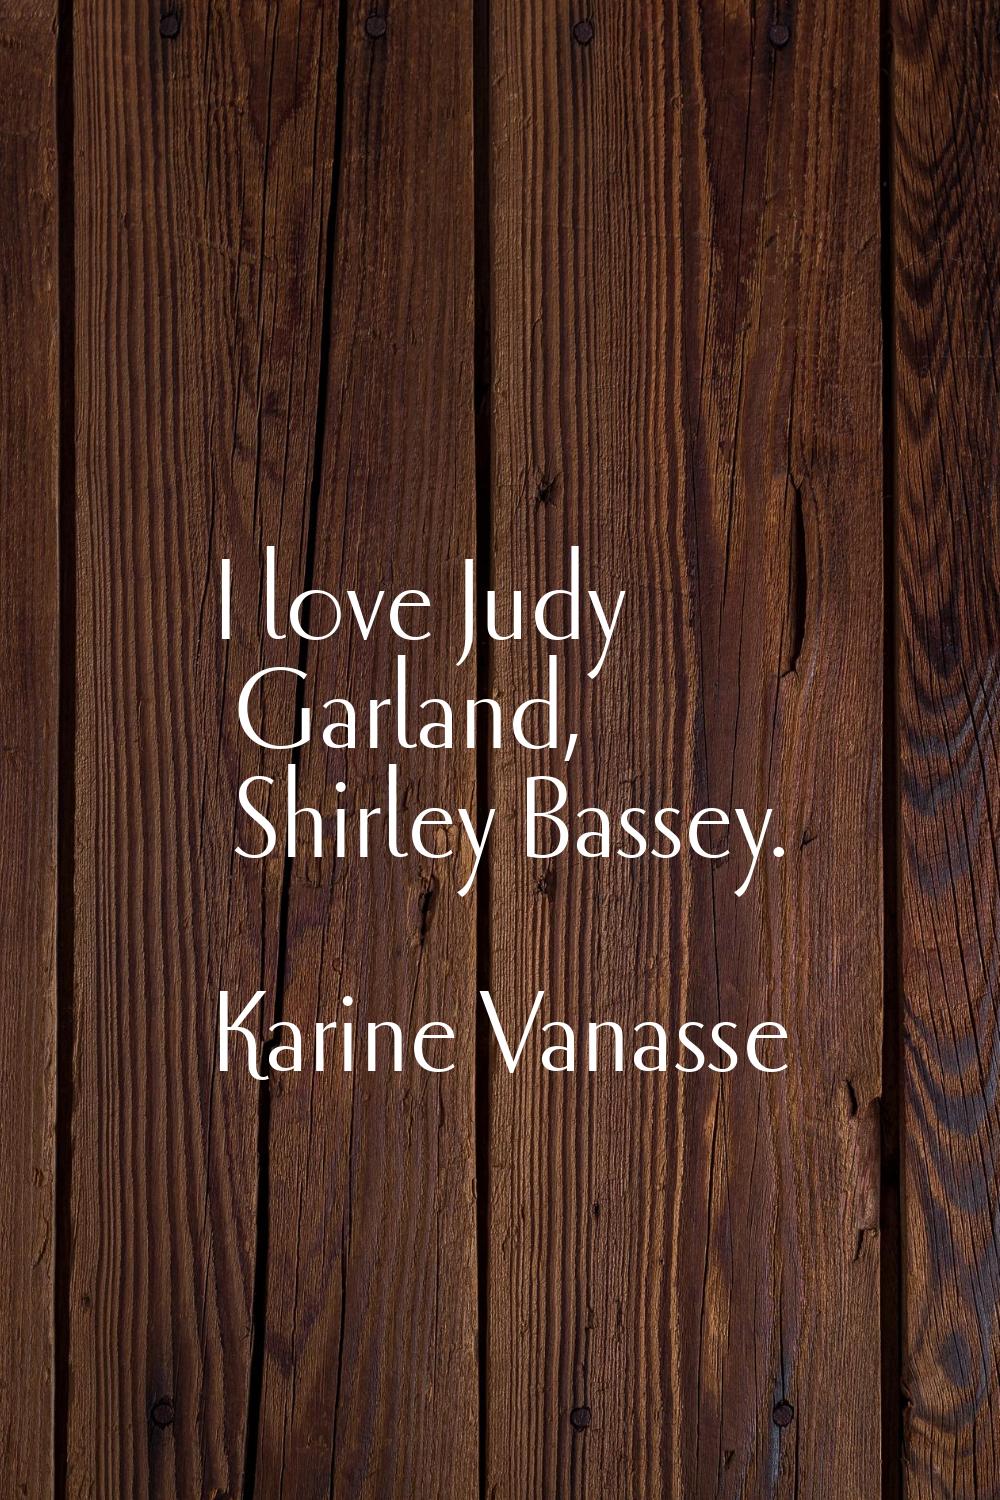 I love Judy Garland, Shirley Bassey.